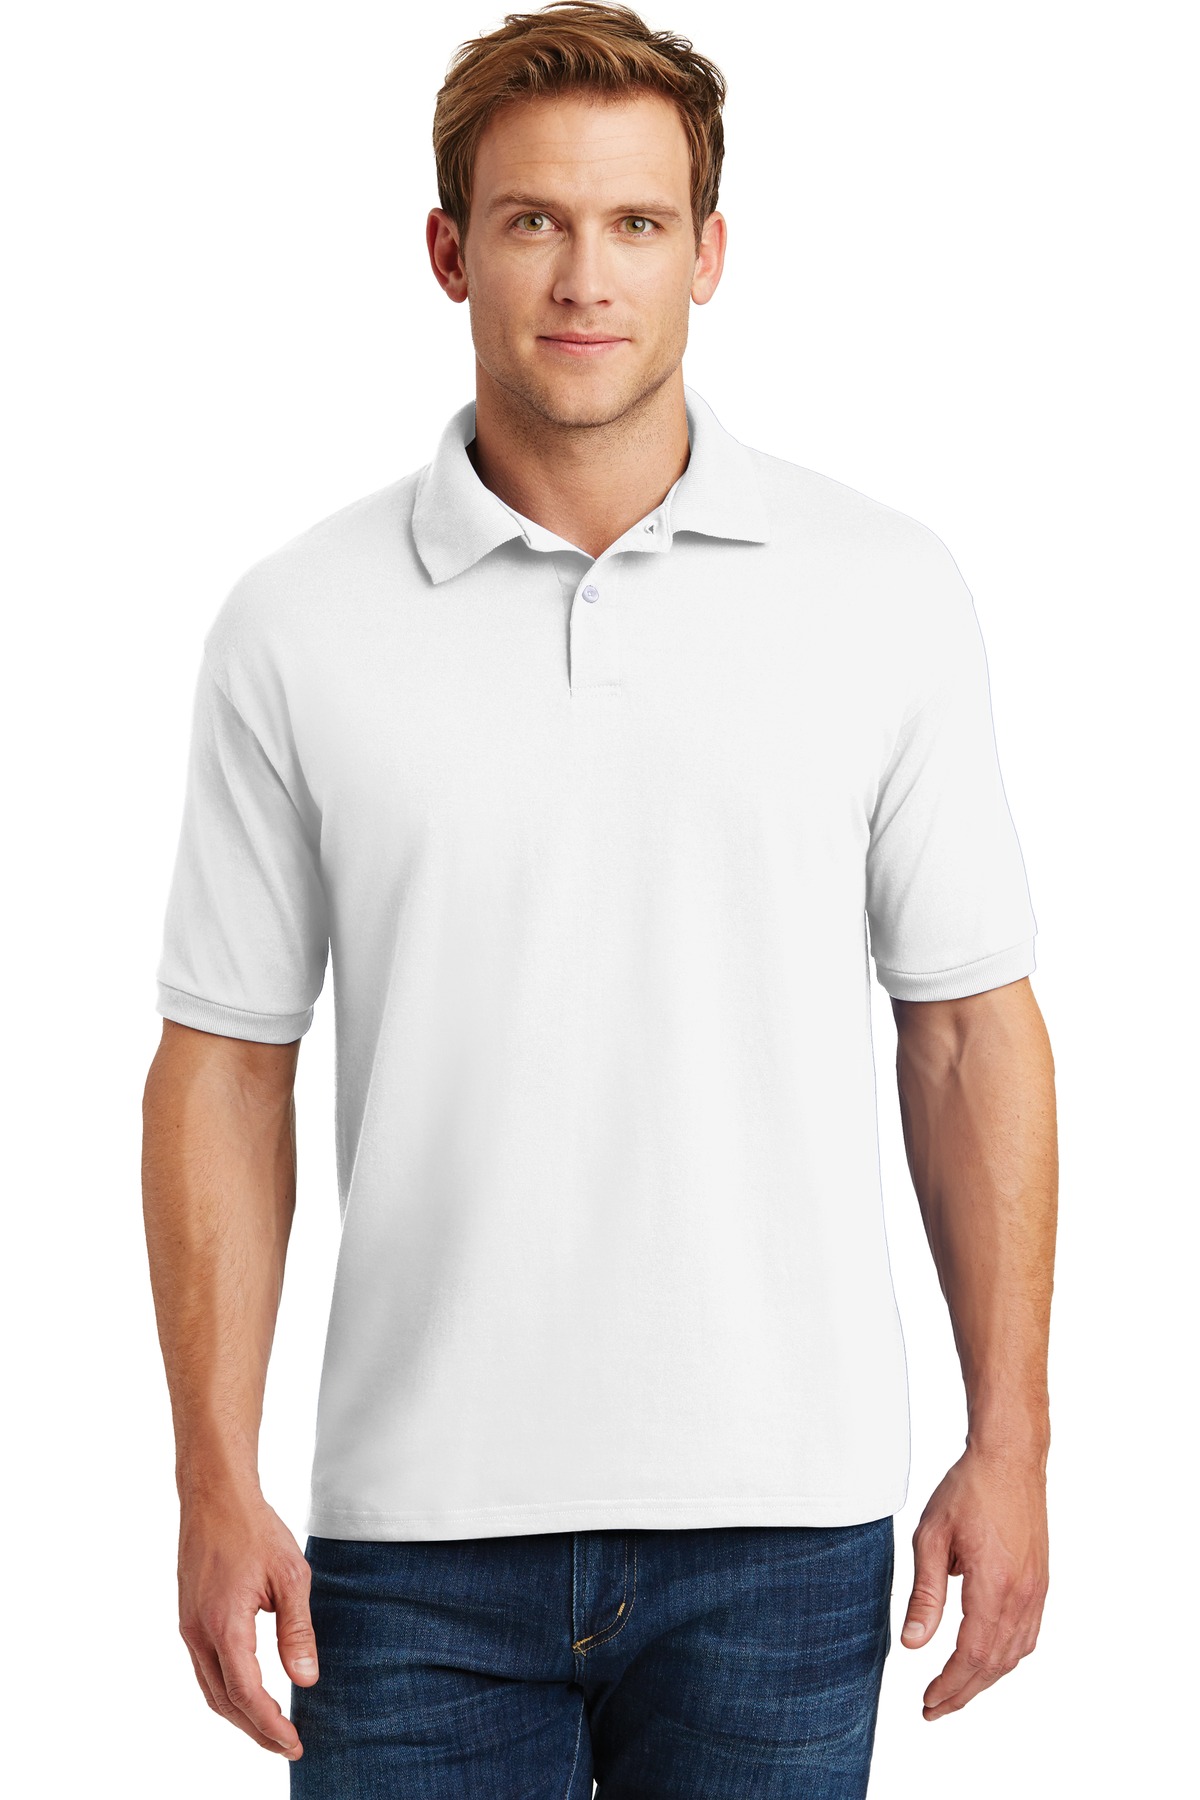 Hanes EcoSmart - 52-Ounce Jersey Knit Sport Shirt-Hanes